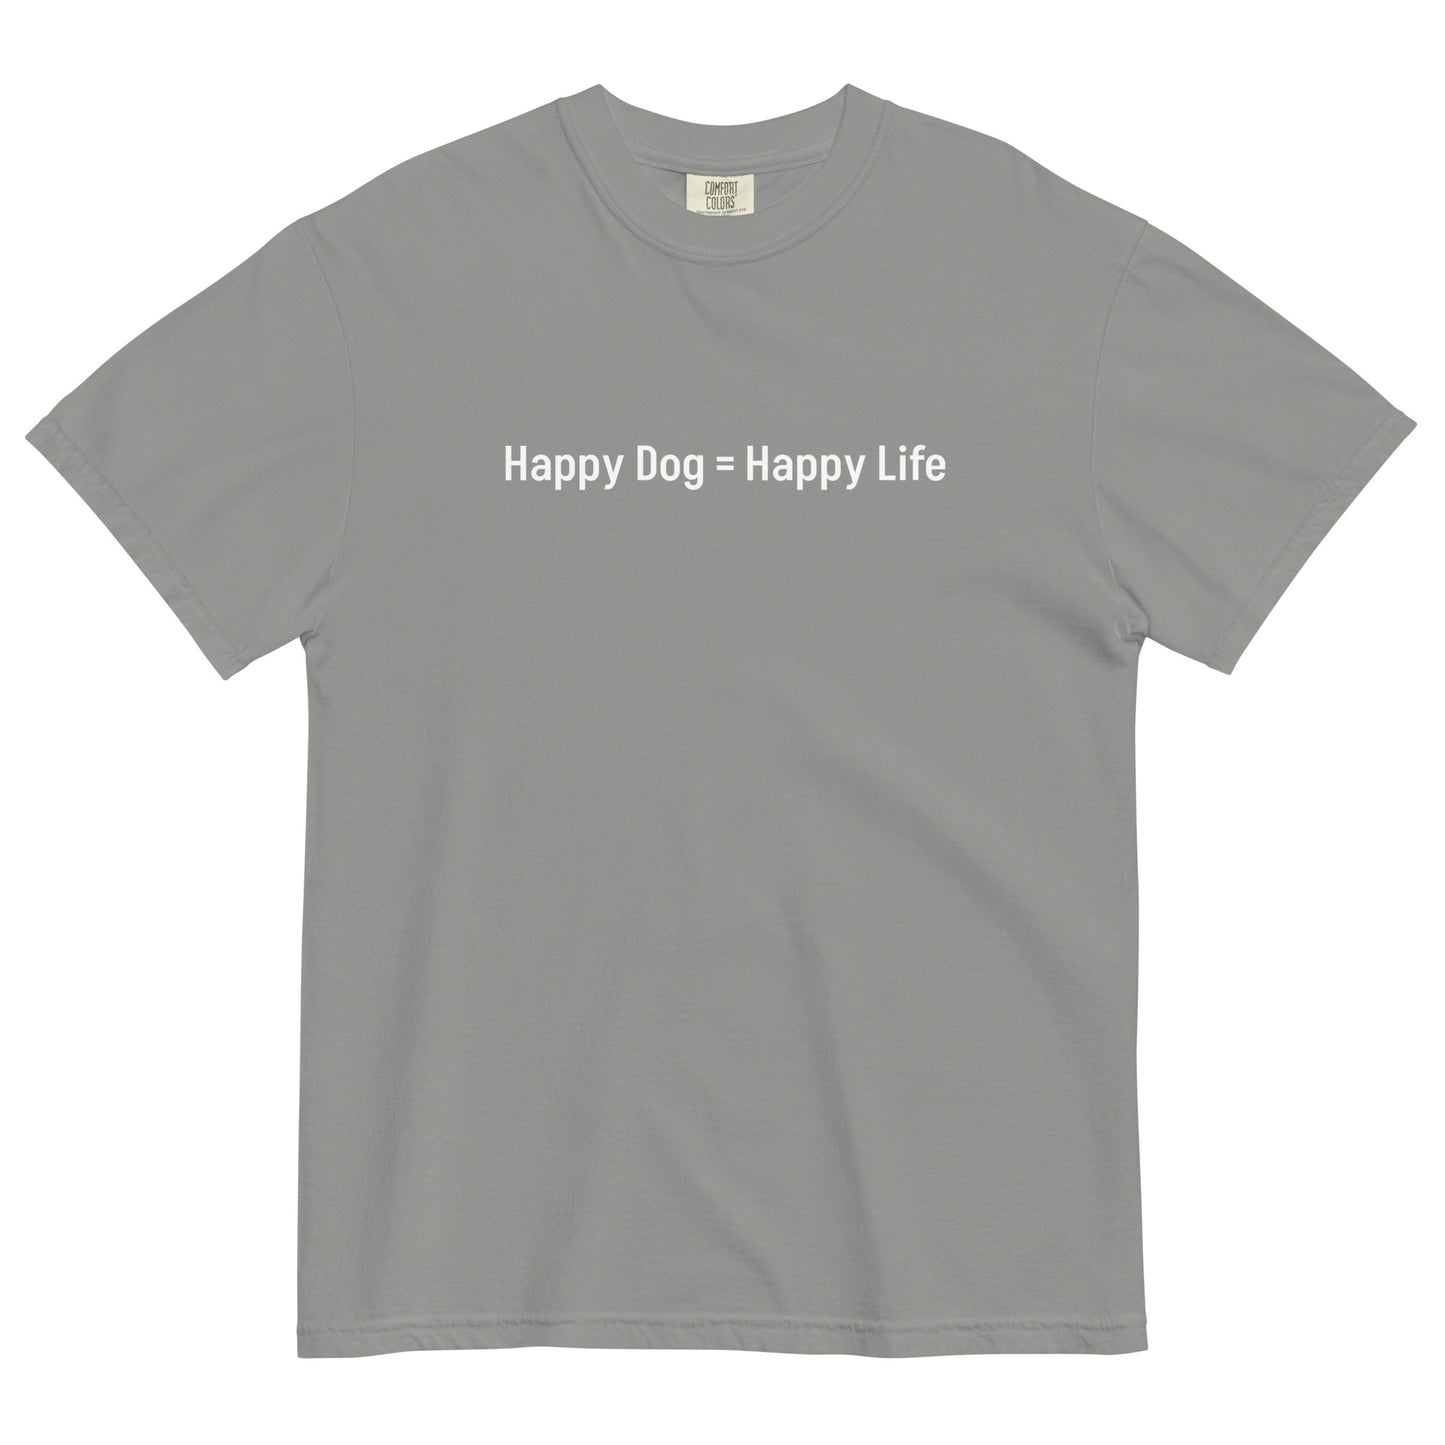 Happy Dog = Happy Life